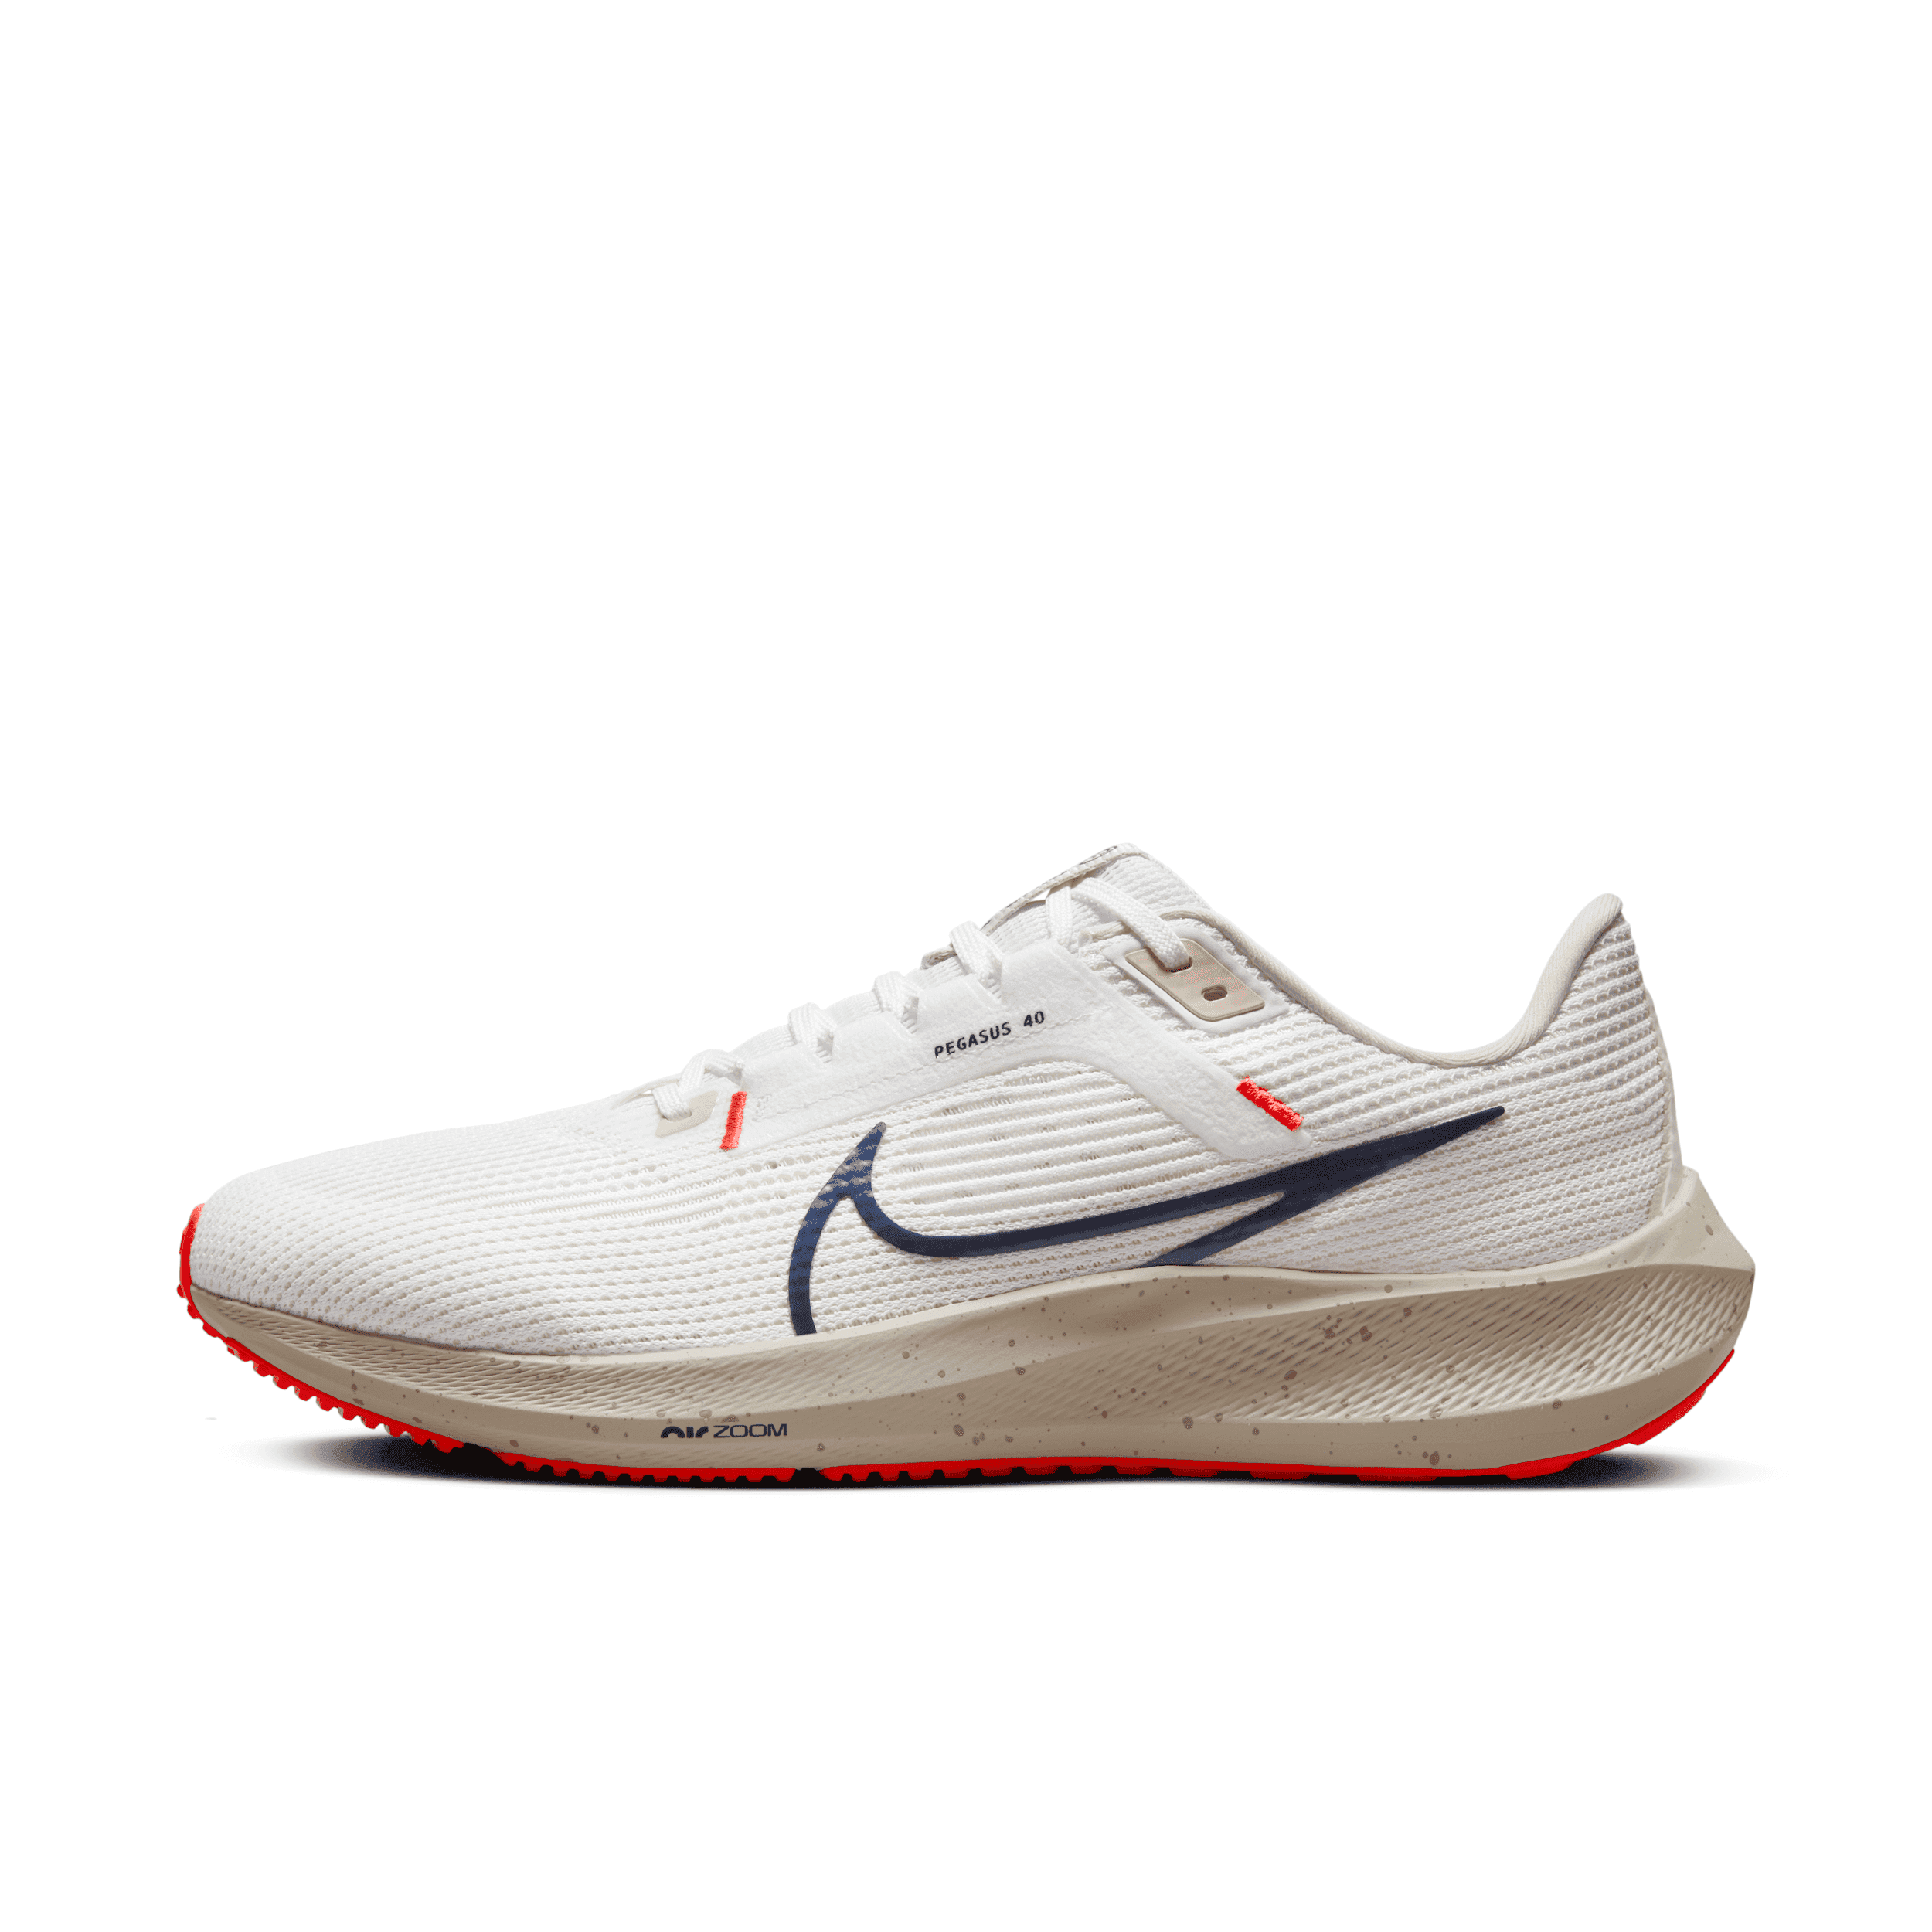 Nike Men's Pegasus 40 Road Running Shoes in White, Size: 11.5 | DV3853-100